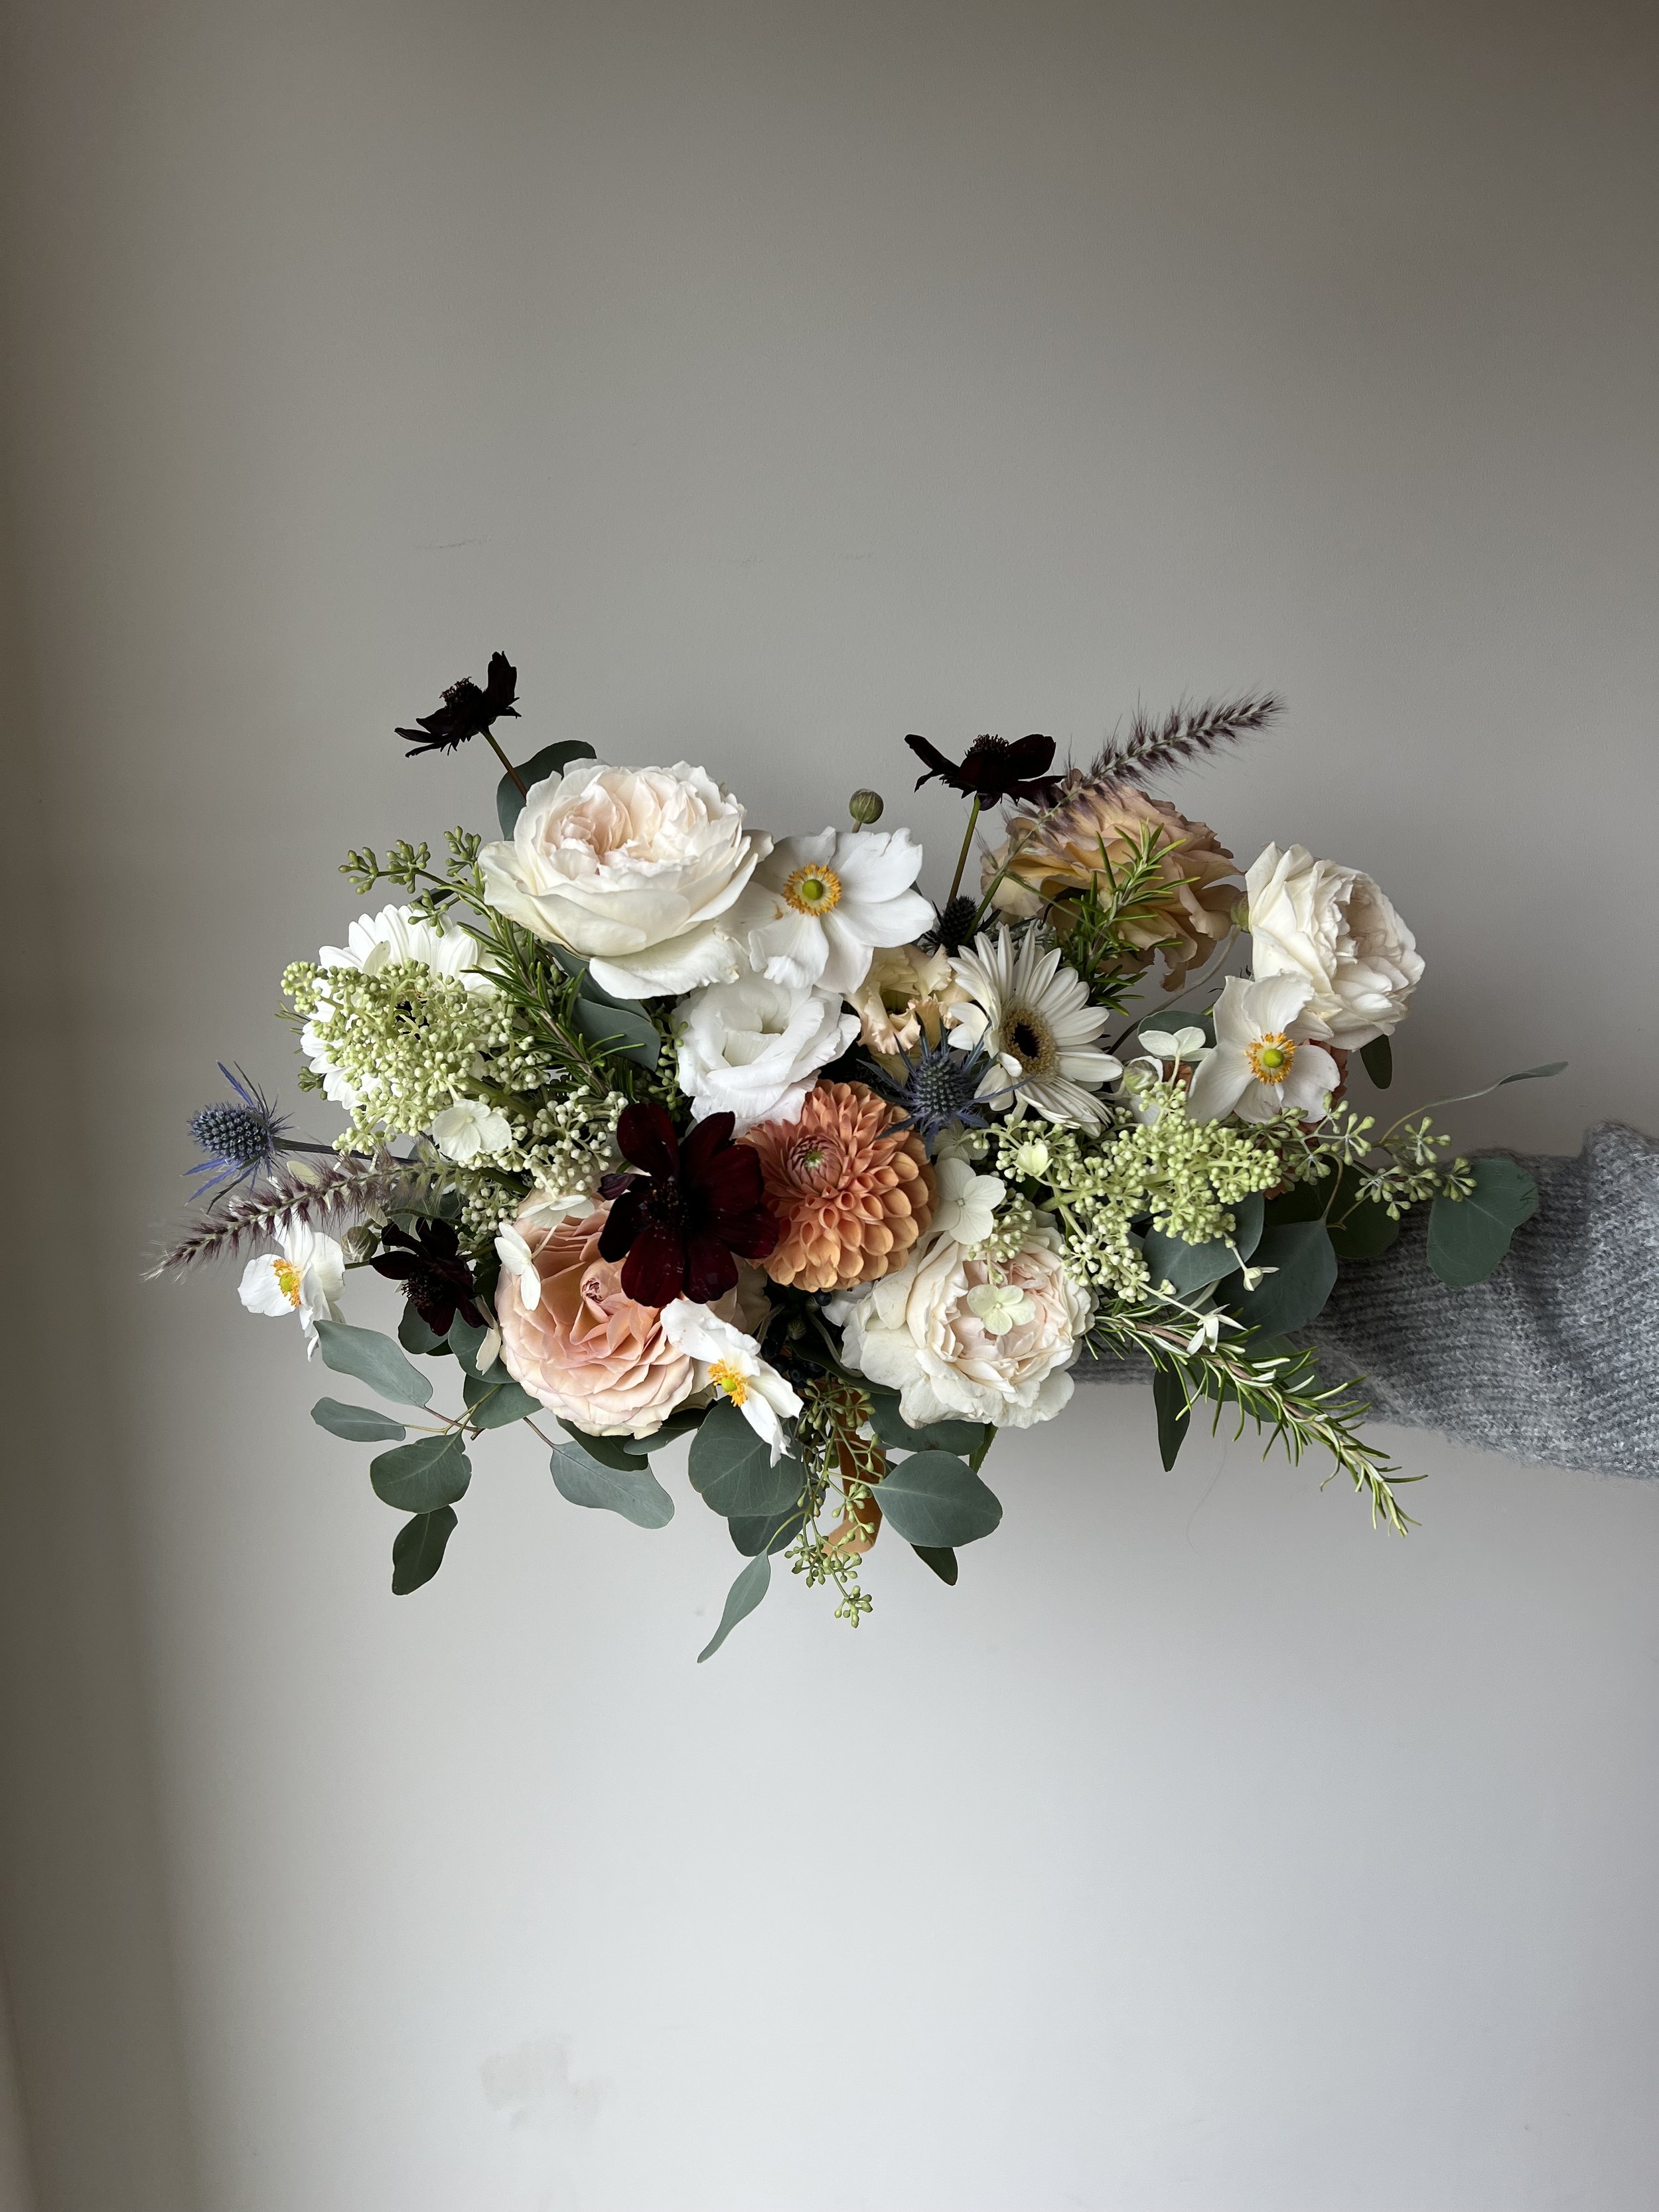 autumn septwmber wedding flowers, bridal bouquet, hanbury wedding barn.jpeg